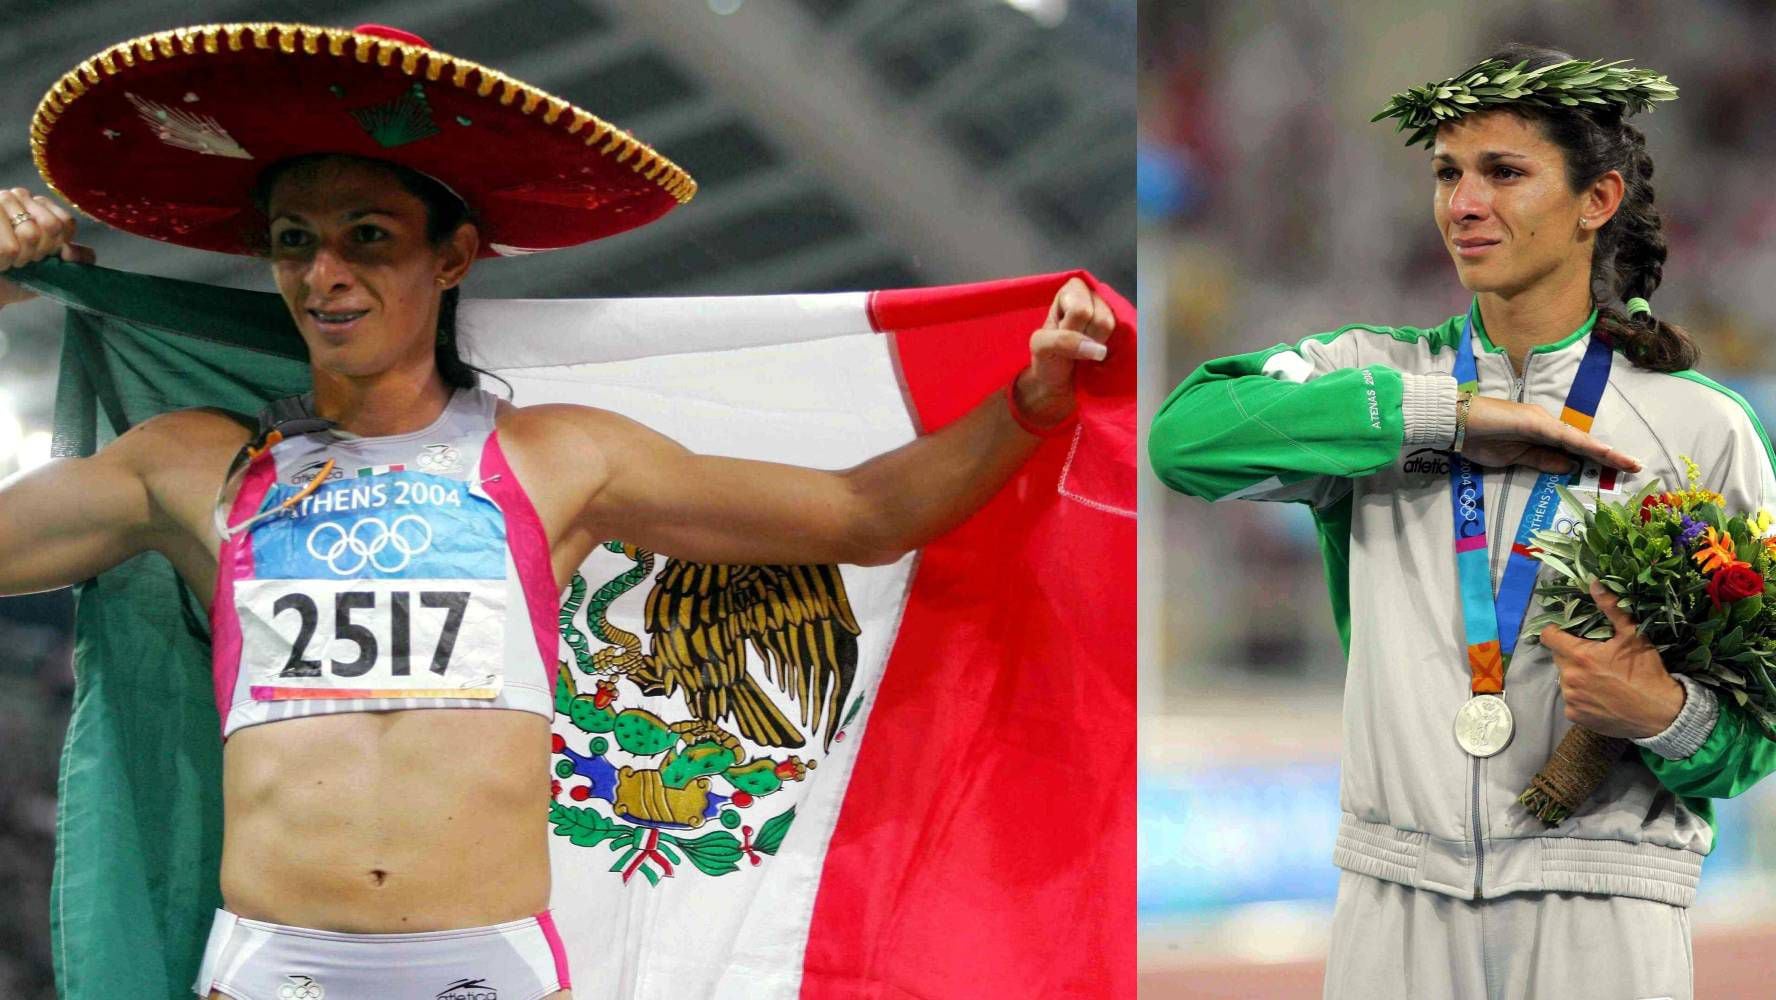 Mucho antes de ser titular de la Conade, Ana Guevara fue un atleta exitosa en las pistas y participó en Juegos Olímpicos. (Foto: Mexsport).